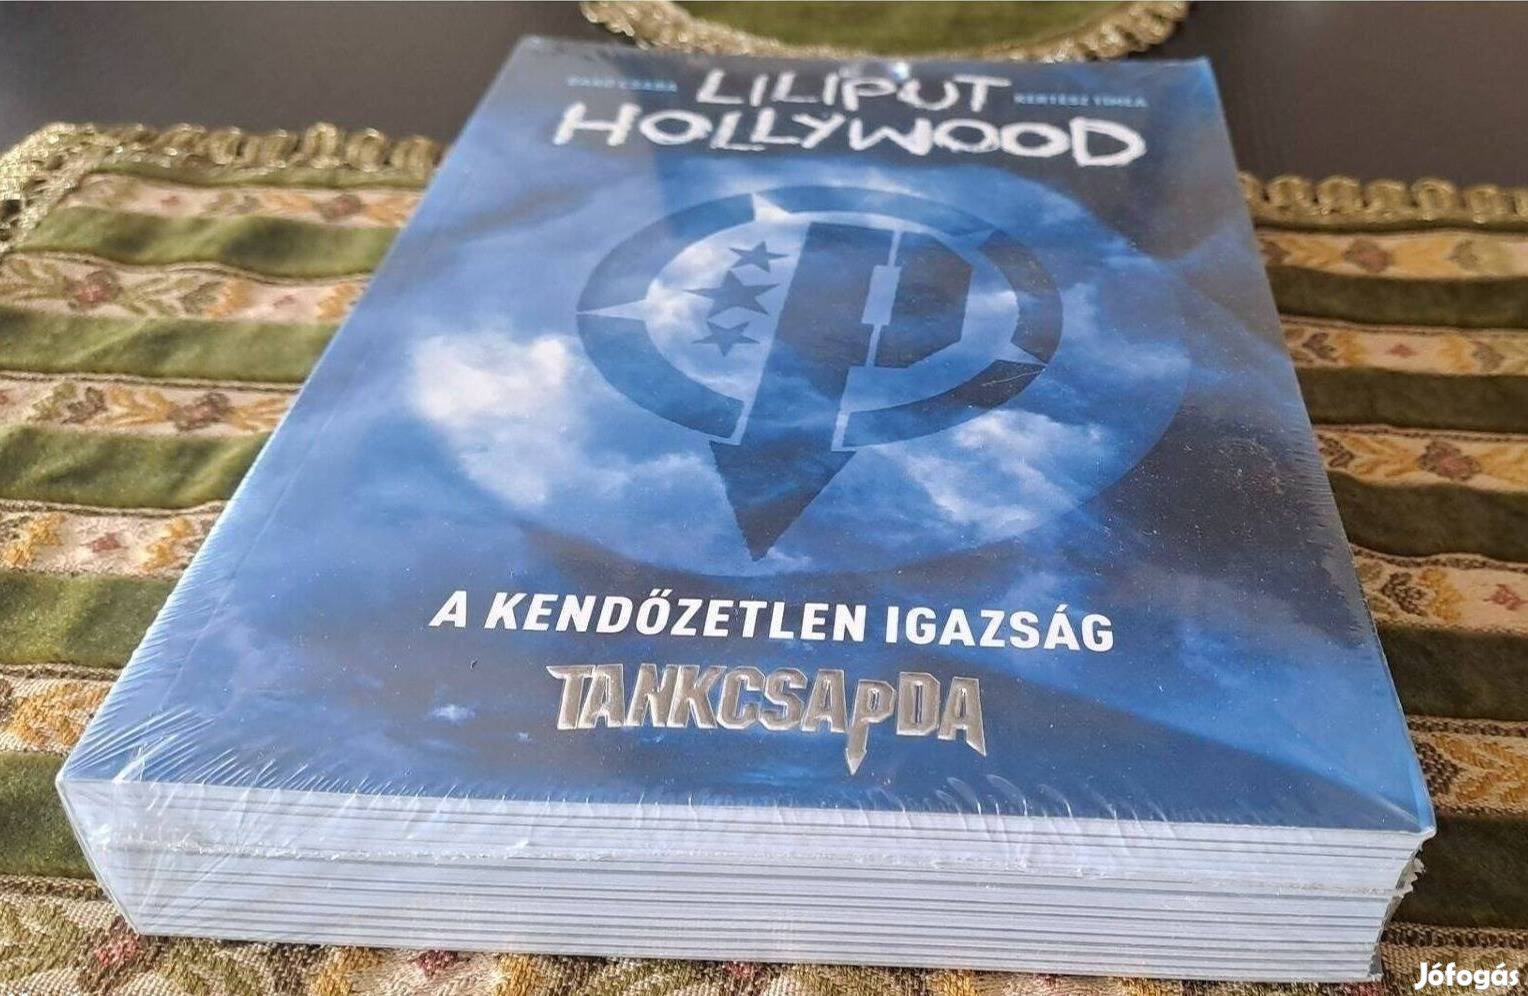 Tankcsapda Liliput Hollywood könyv